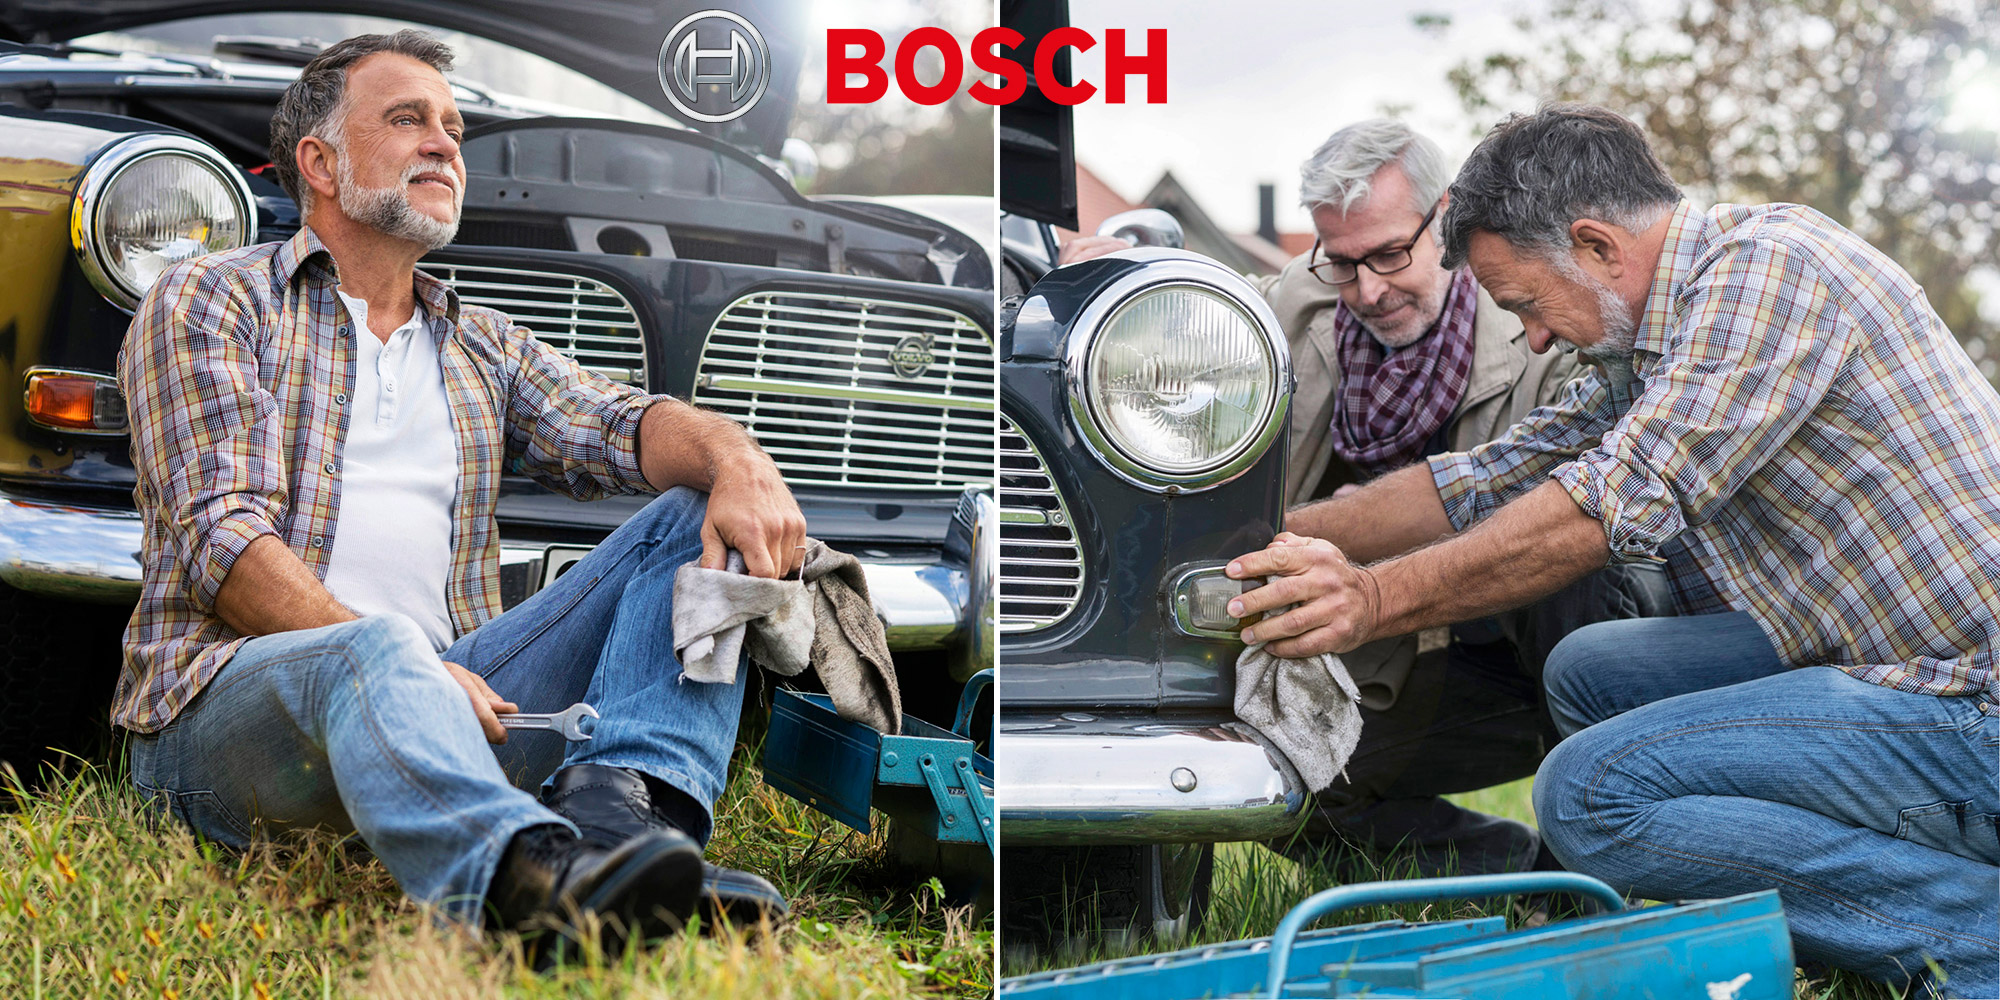 Bestager-, Classic-, Senior-, 50+ Model Michael Diehl Fotomodell aus Esslingen bei Stuttgart mit Advertising Werbung Bosch 13